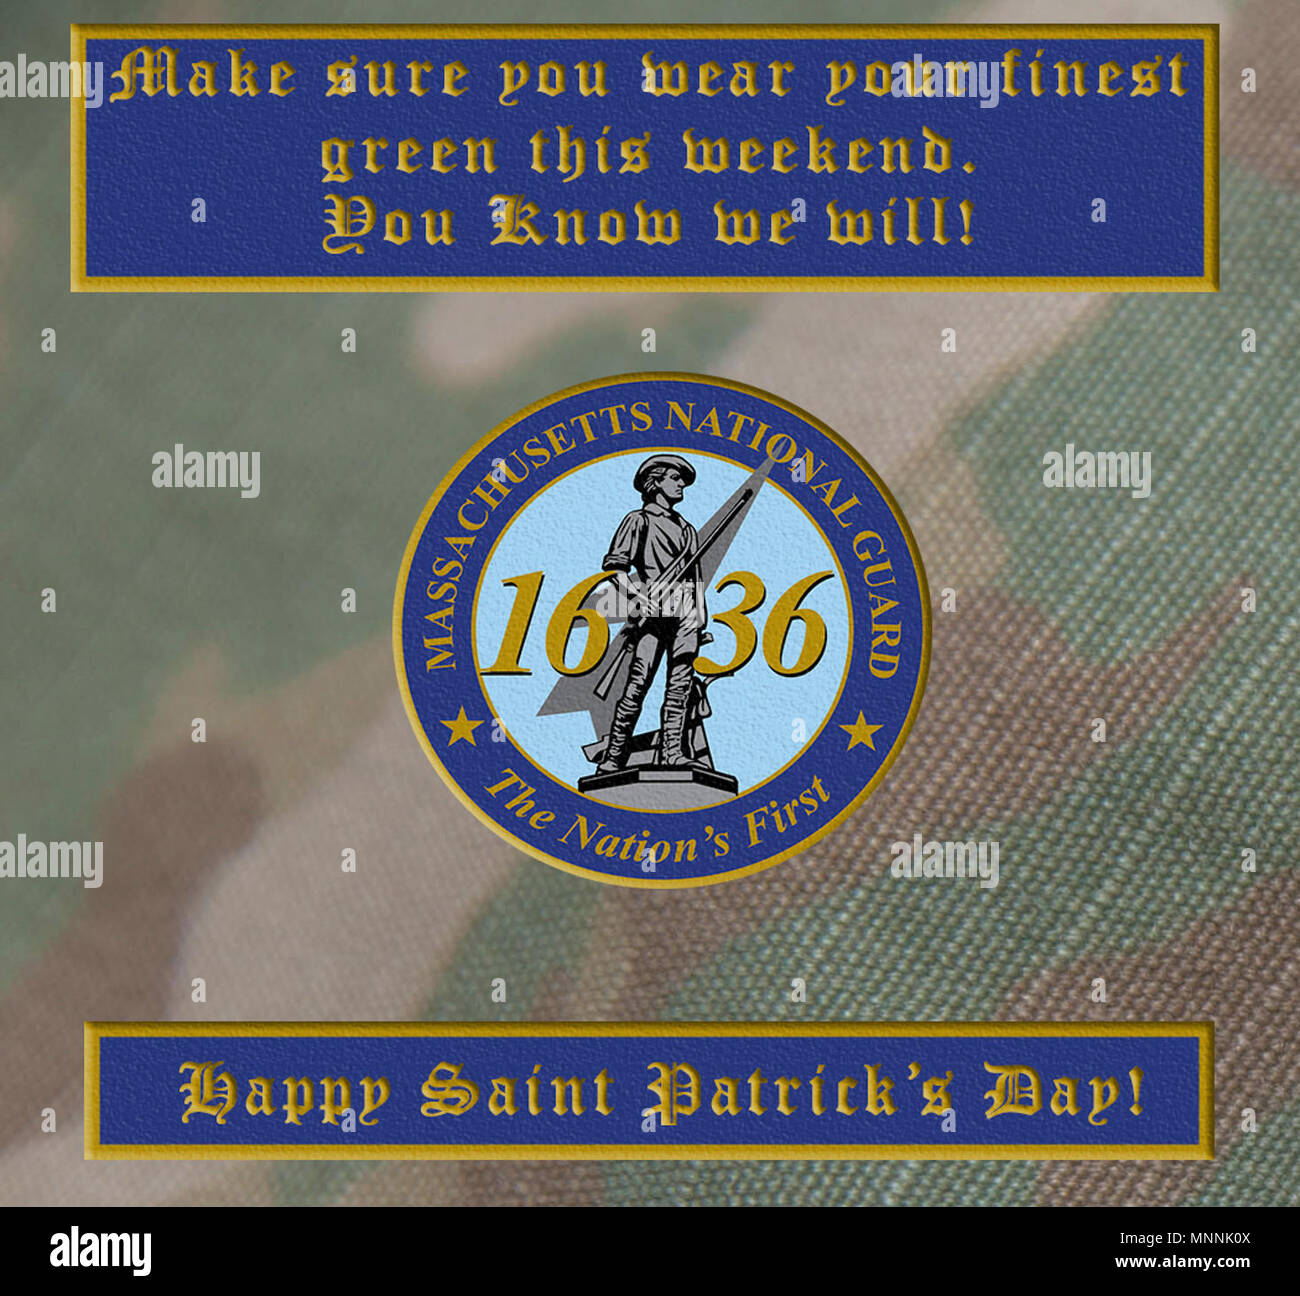 HANSCOM AIR FORCE BASE, Mass.-- Massachusetts National Guard hat ein Erbe der Iren - amerikanische in Ihren eigenen Reihen. Als Organisation, wir feiern ihren Beitrag dieser Saint Patrick's Day. Armee Abbildung Stockfoto